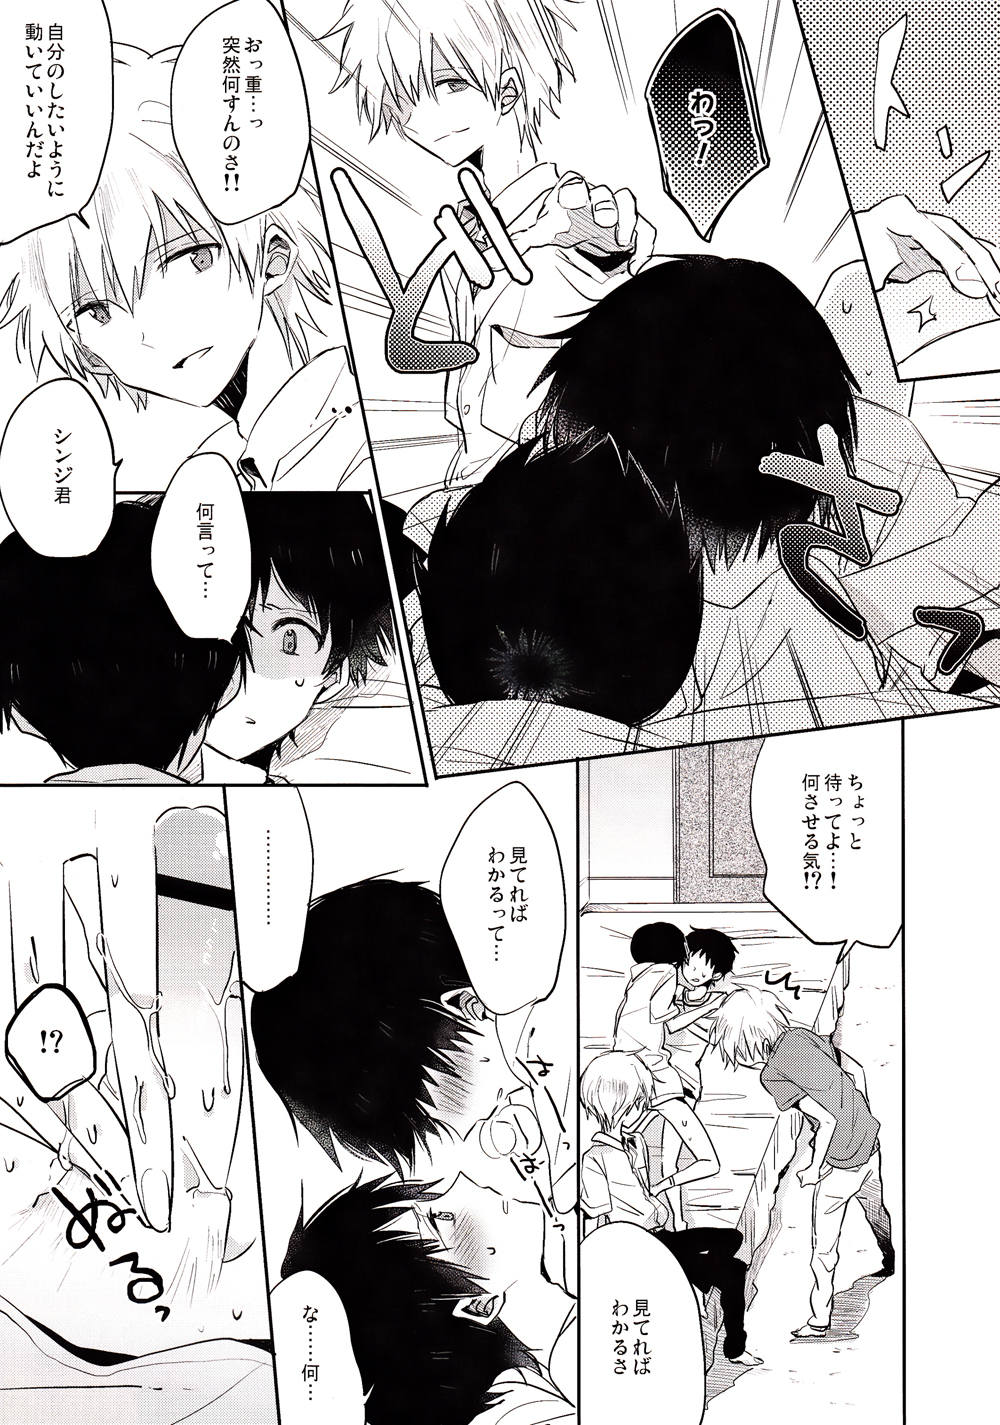 [Kaito B  (Yugetsu Chito)  ranko  chui (Neon Genesis Evangelion) page 10 full